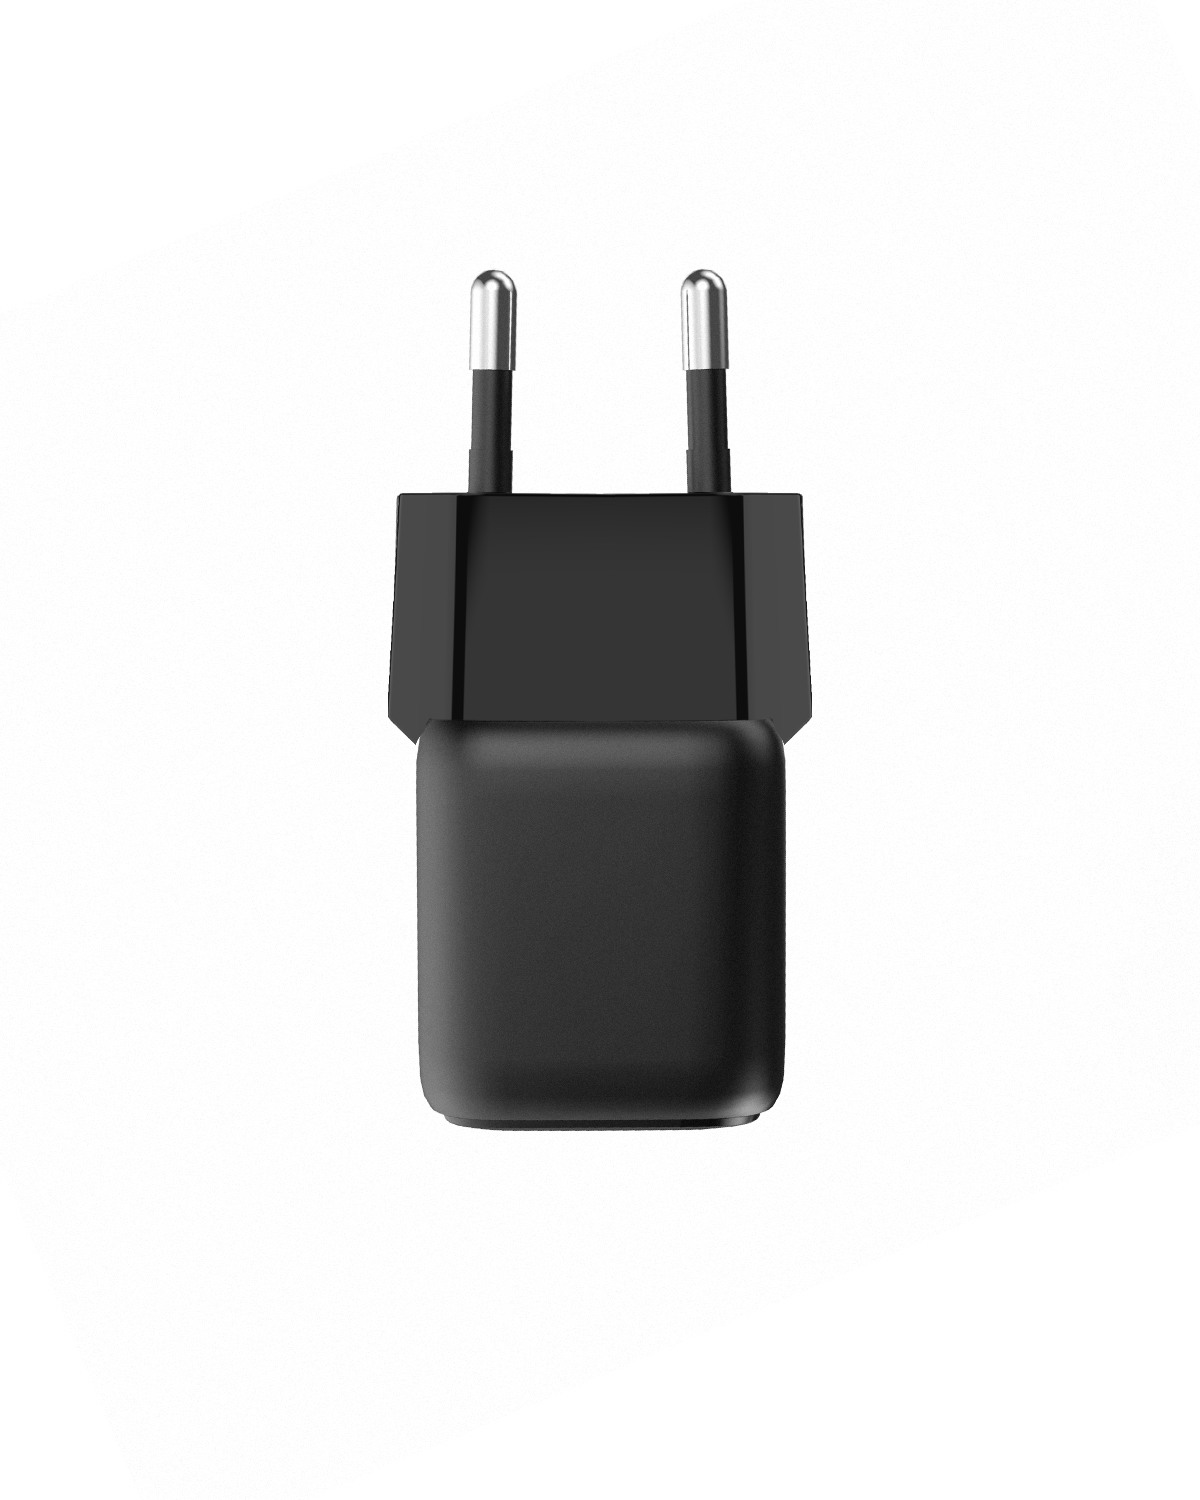 AUKEY Minima 20W GaN USB-C PA-B1T BK Wall Charger, Black